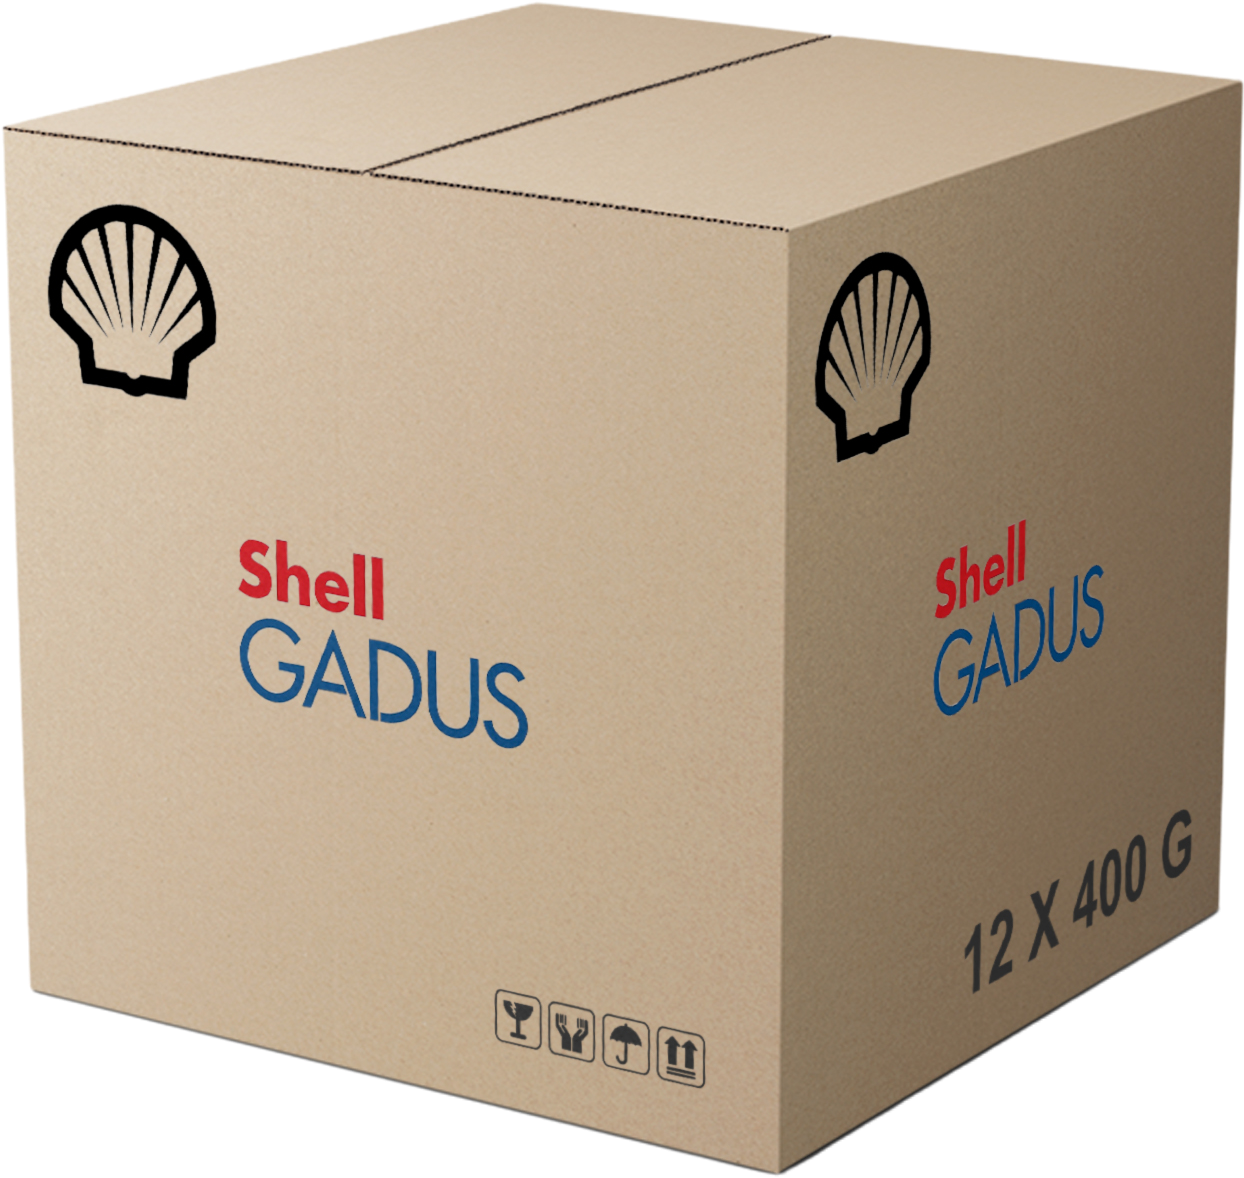 Shell Gadus S3 V460D 1.5, 12 x 400 gr